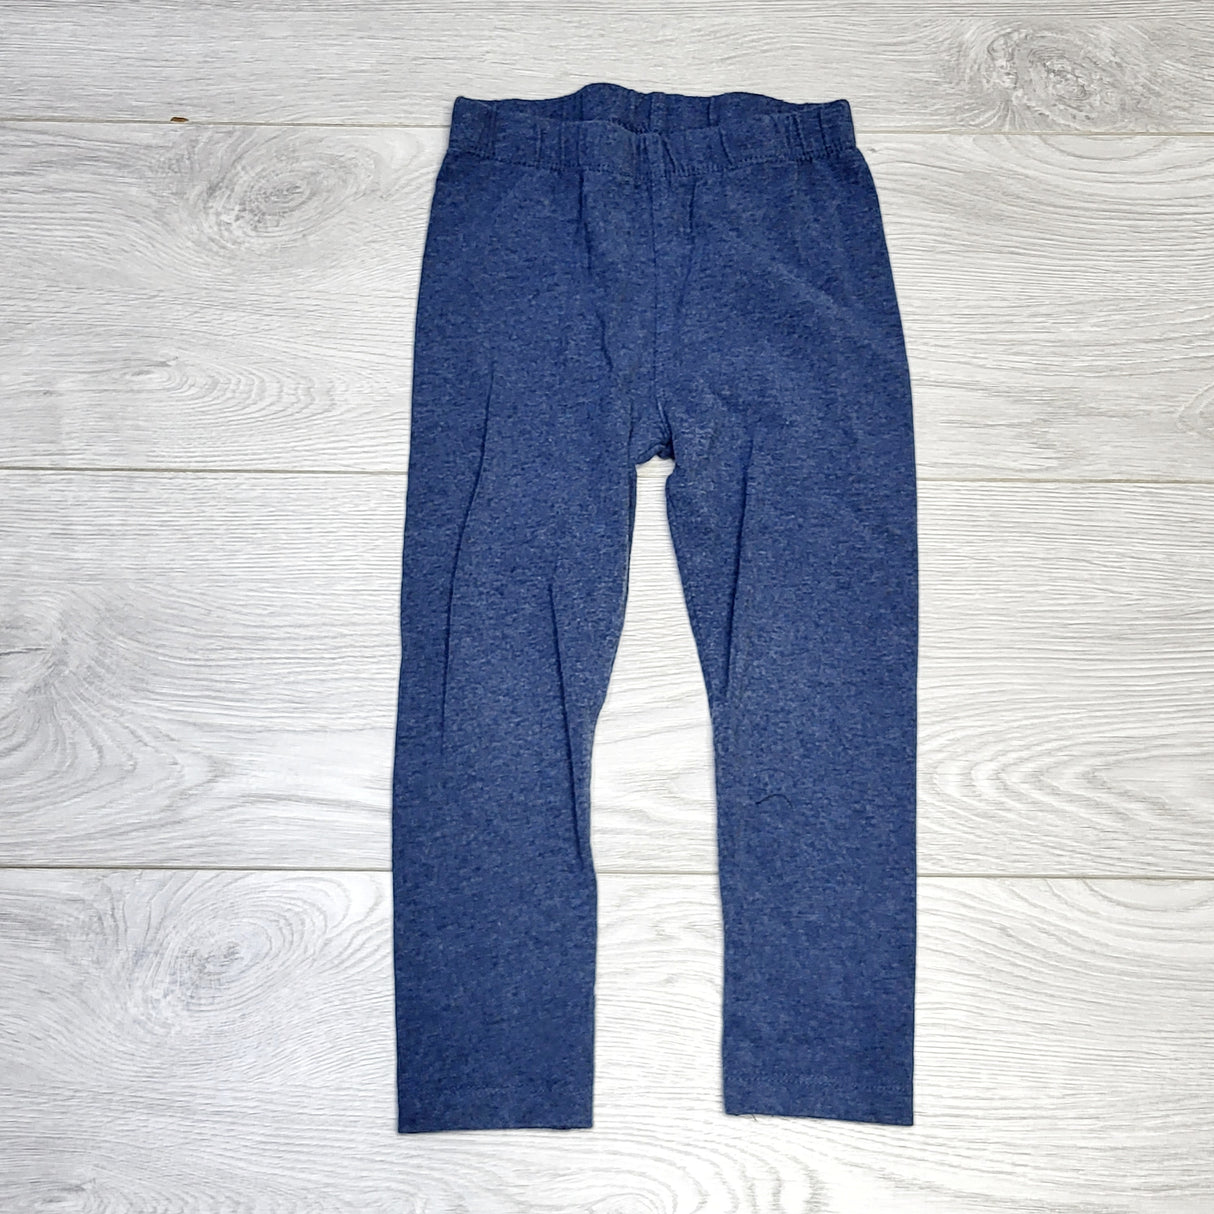 SPLT2 - Pekkle blue cotton pants, size 3T